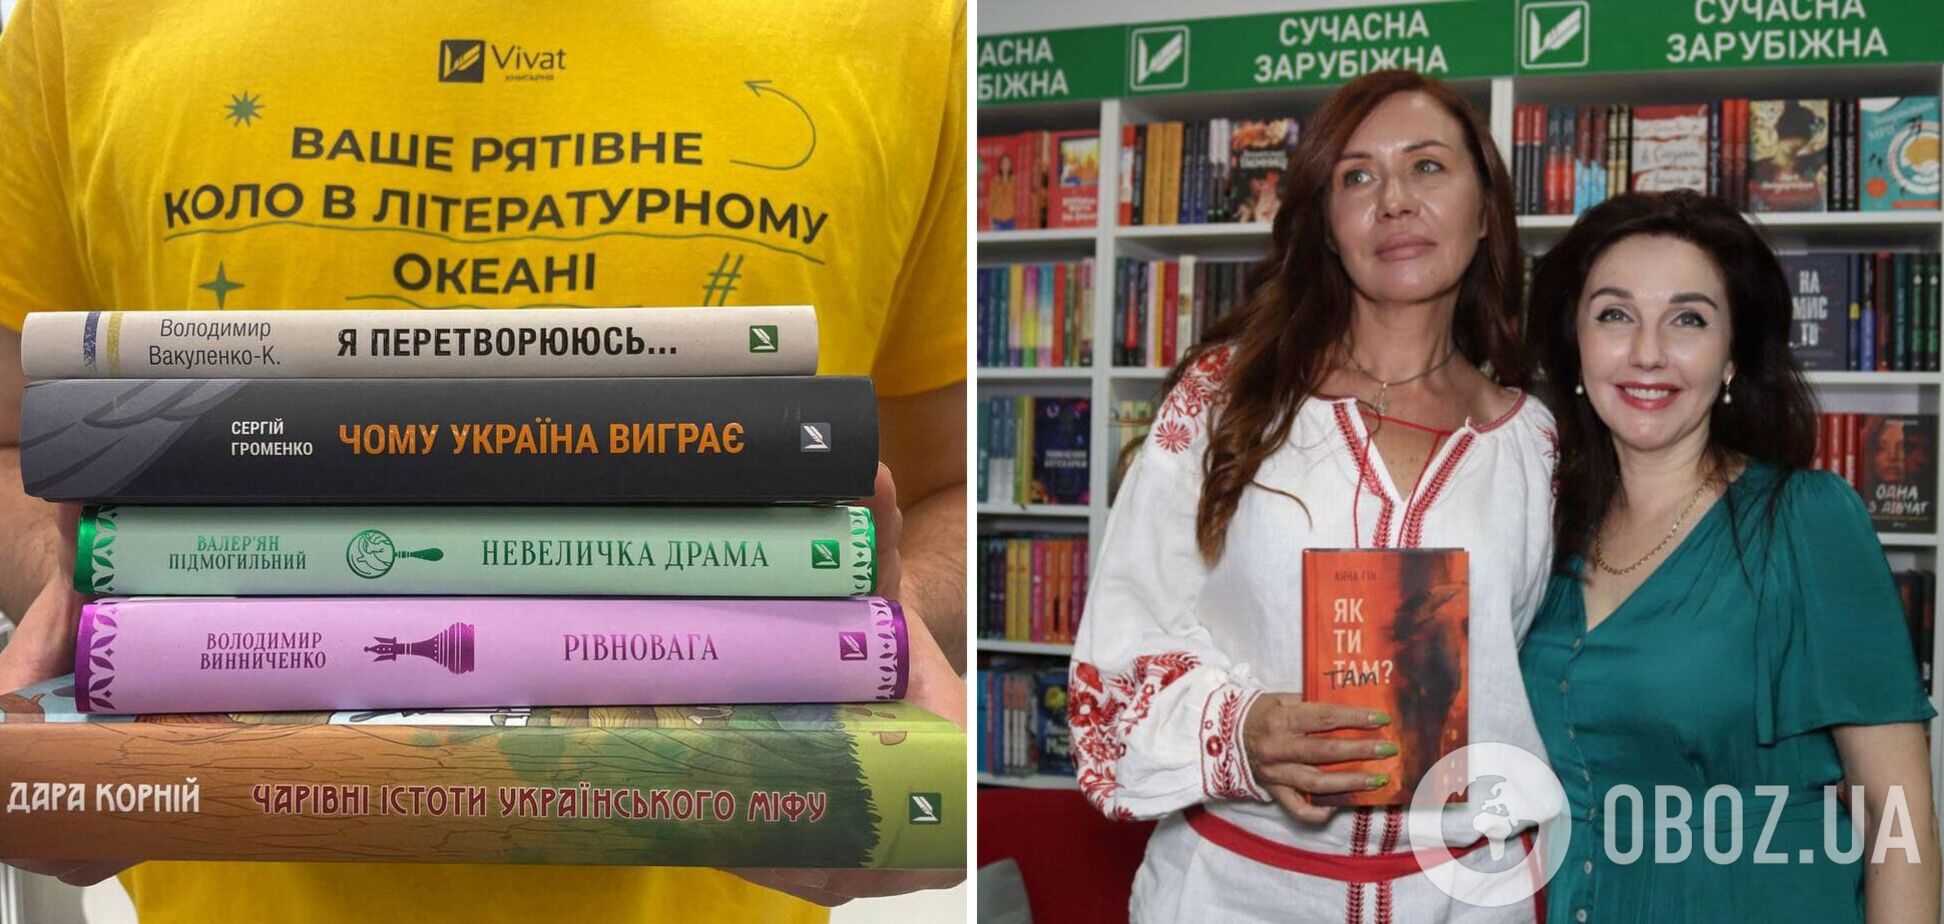 Ренессанс украинской книги: новые смыслы и тренд на открытие книжных магазинов